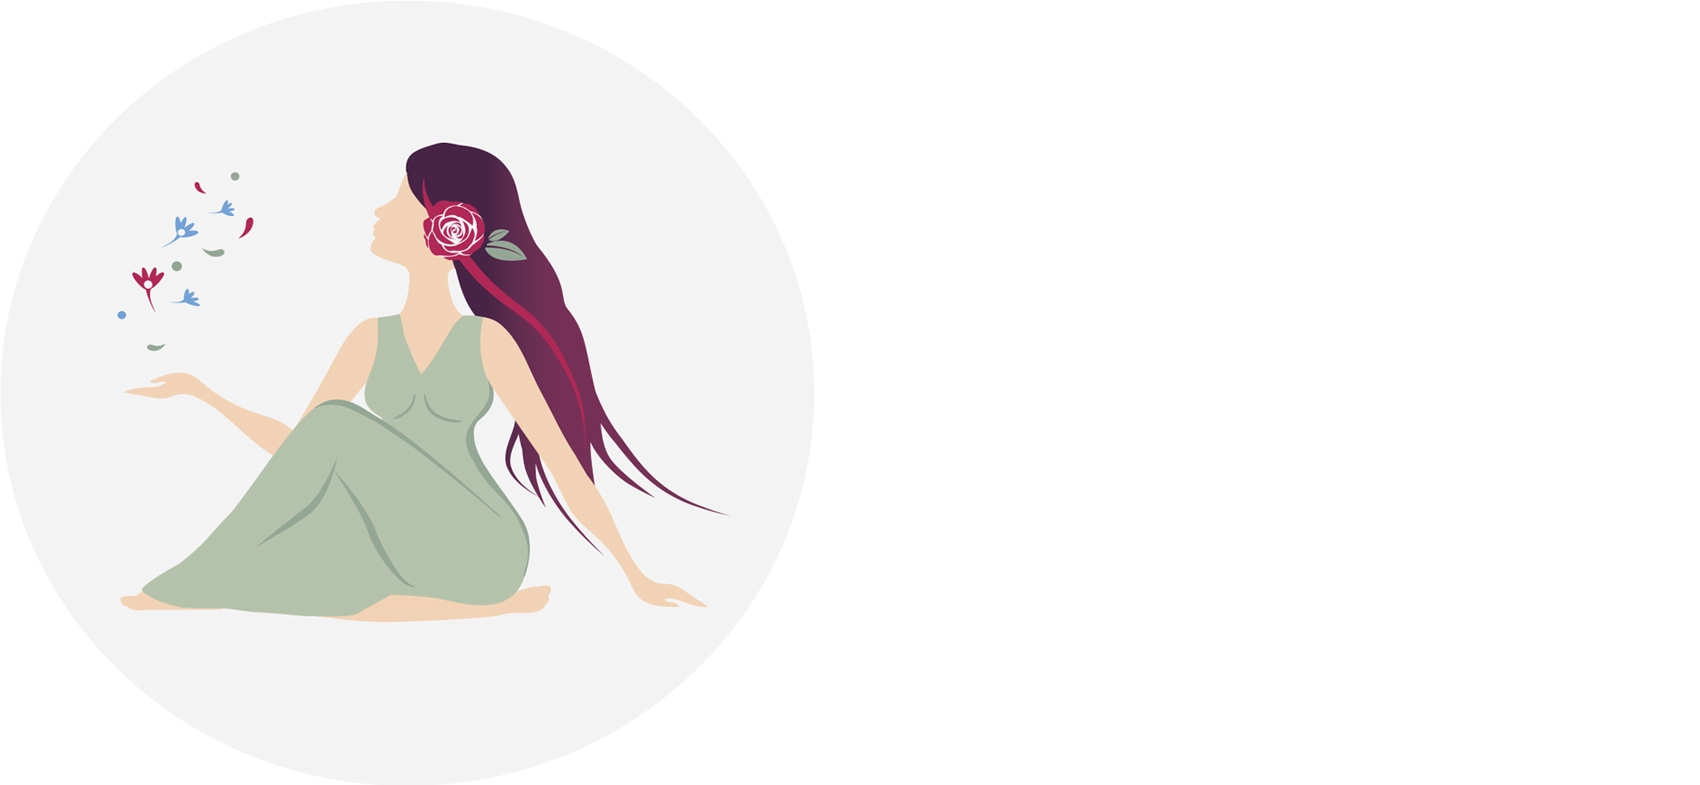 Sage Goddess Logo